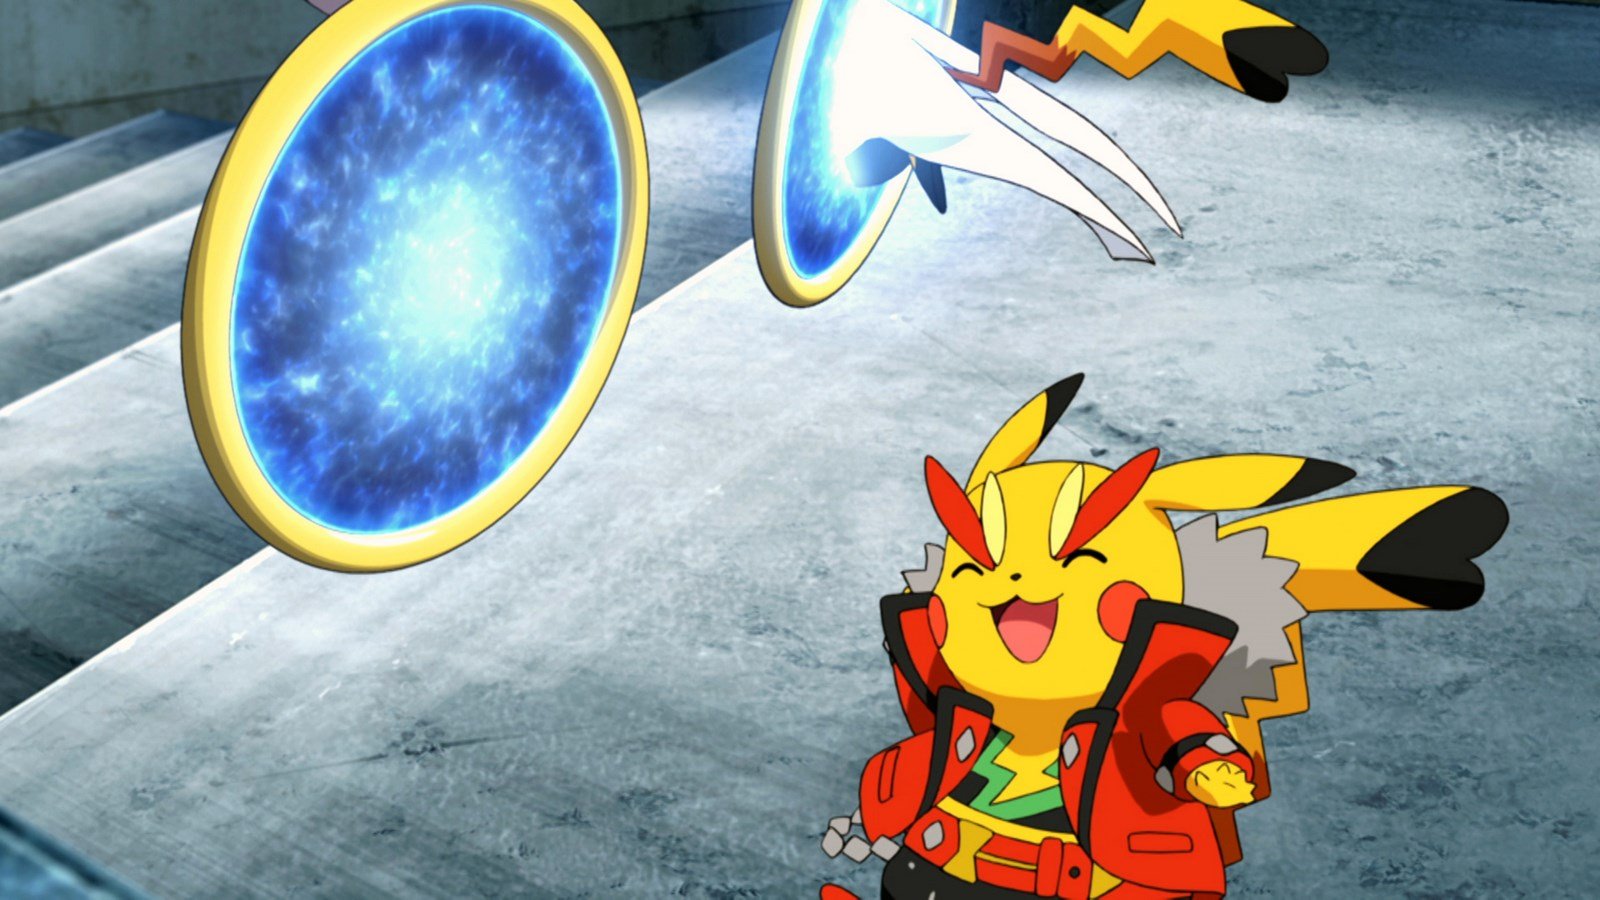 Assistir Pokémon o Filme: Hoopa e o Duelo Lendário Online Gratis (Filme HD)